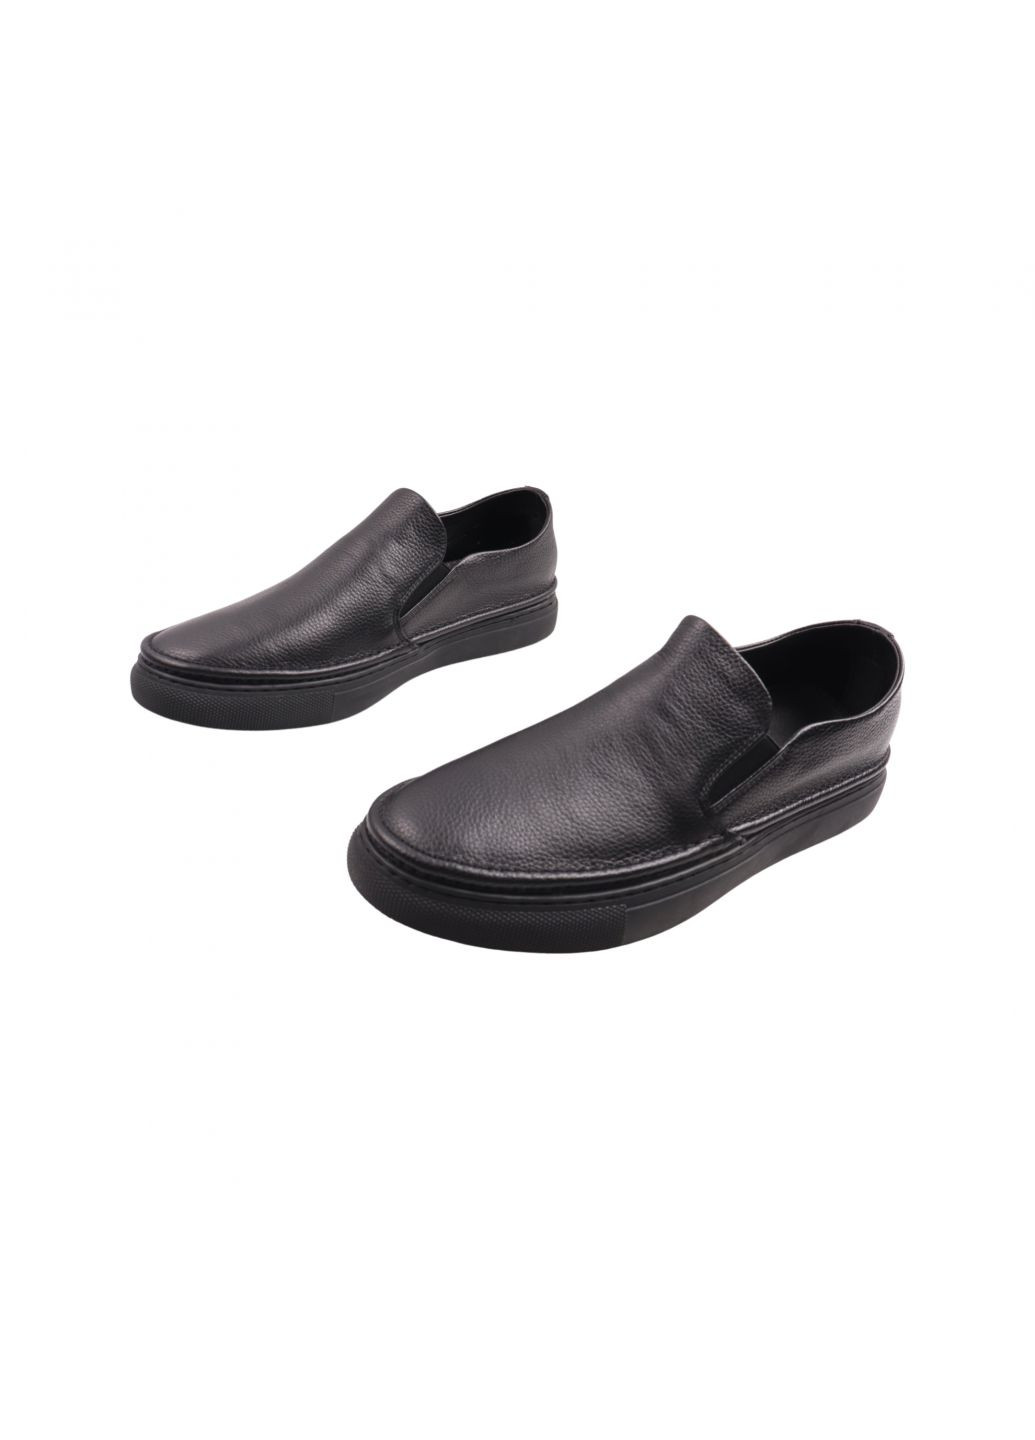 Черные туфли мужские черные натуральная кожа Berisstini